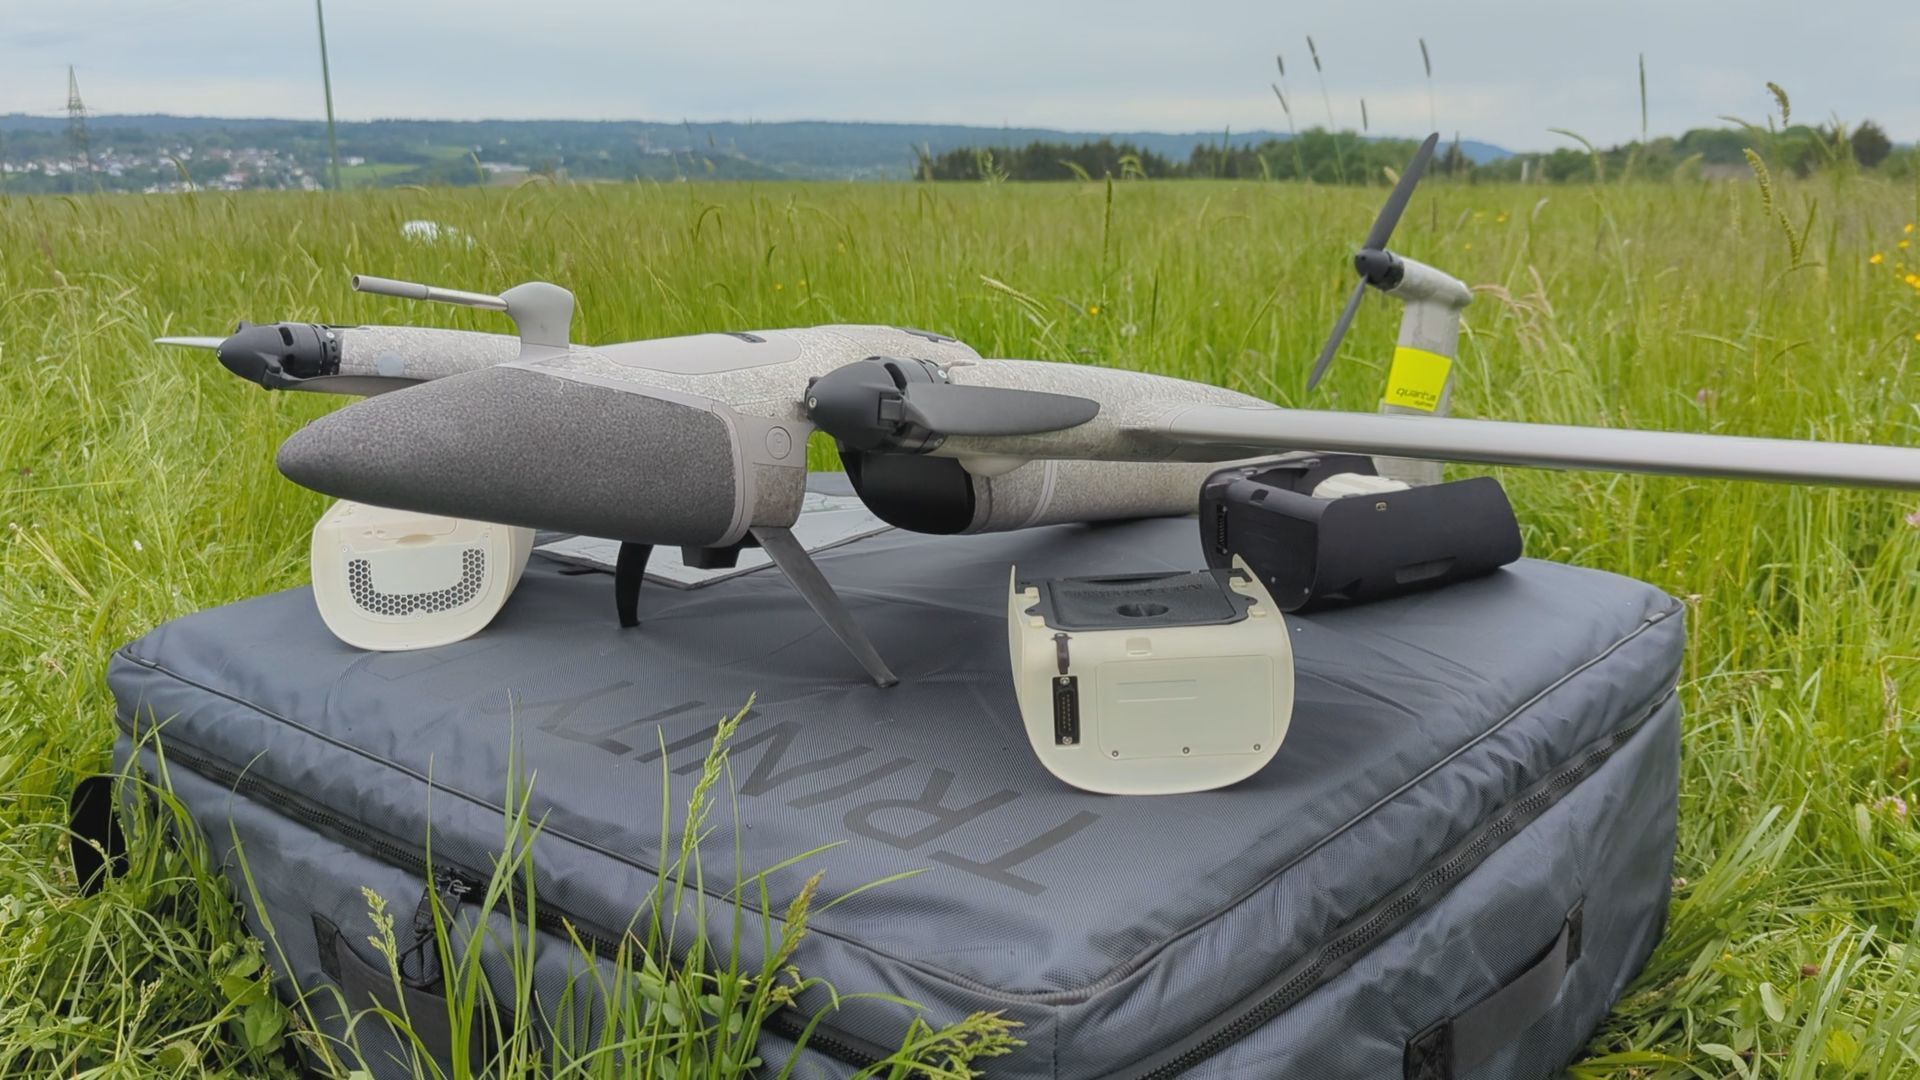 Abstriche und Blutproben per Drohne: Ländliche medizinische Versorgung soll durch Einsatz von Mini-Flugzeug verbessert werden